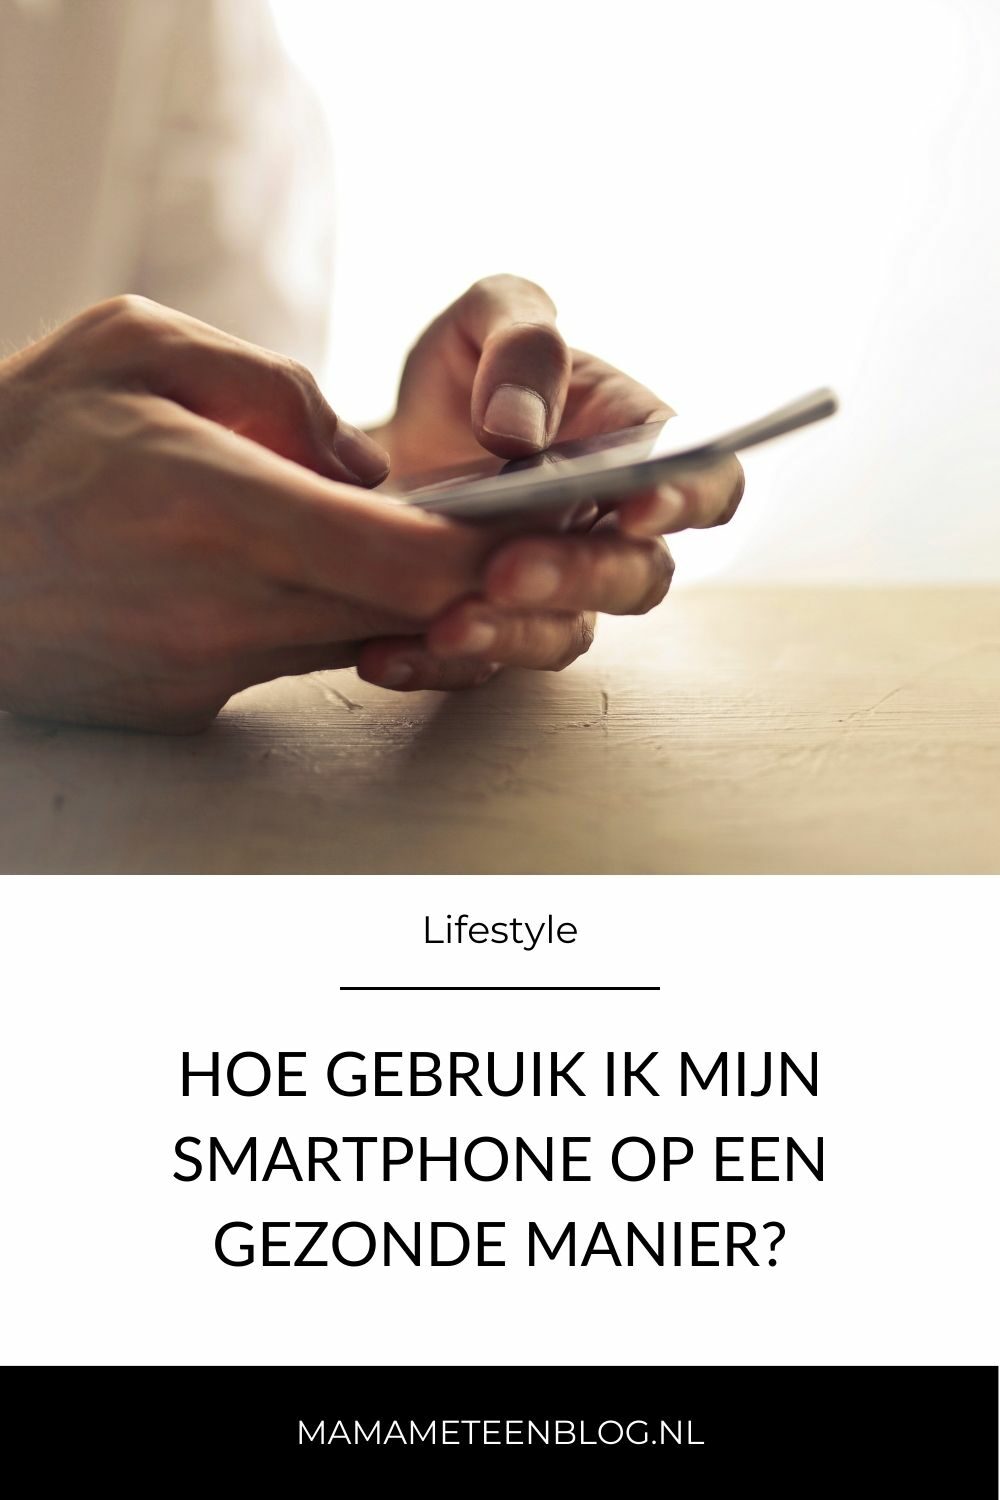 Hoe gebruik ik mijn smartphone op een gezonde manier mamameteenblog.nl